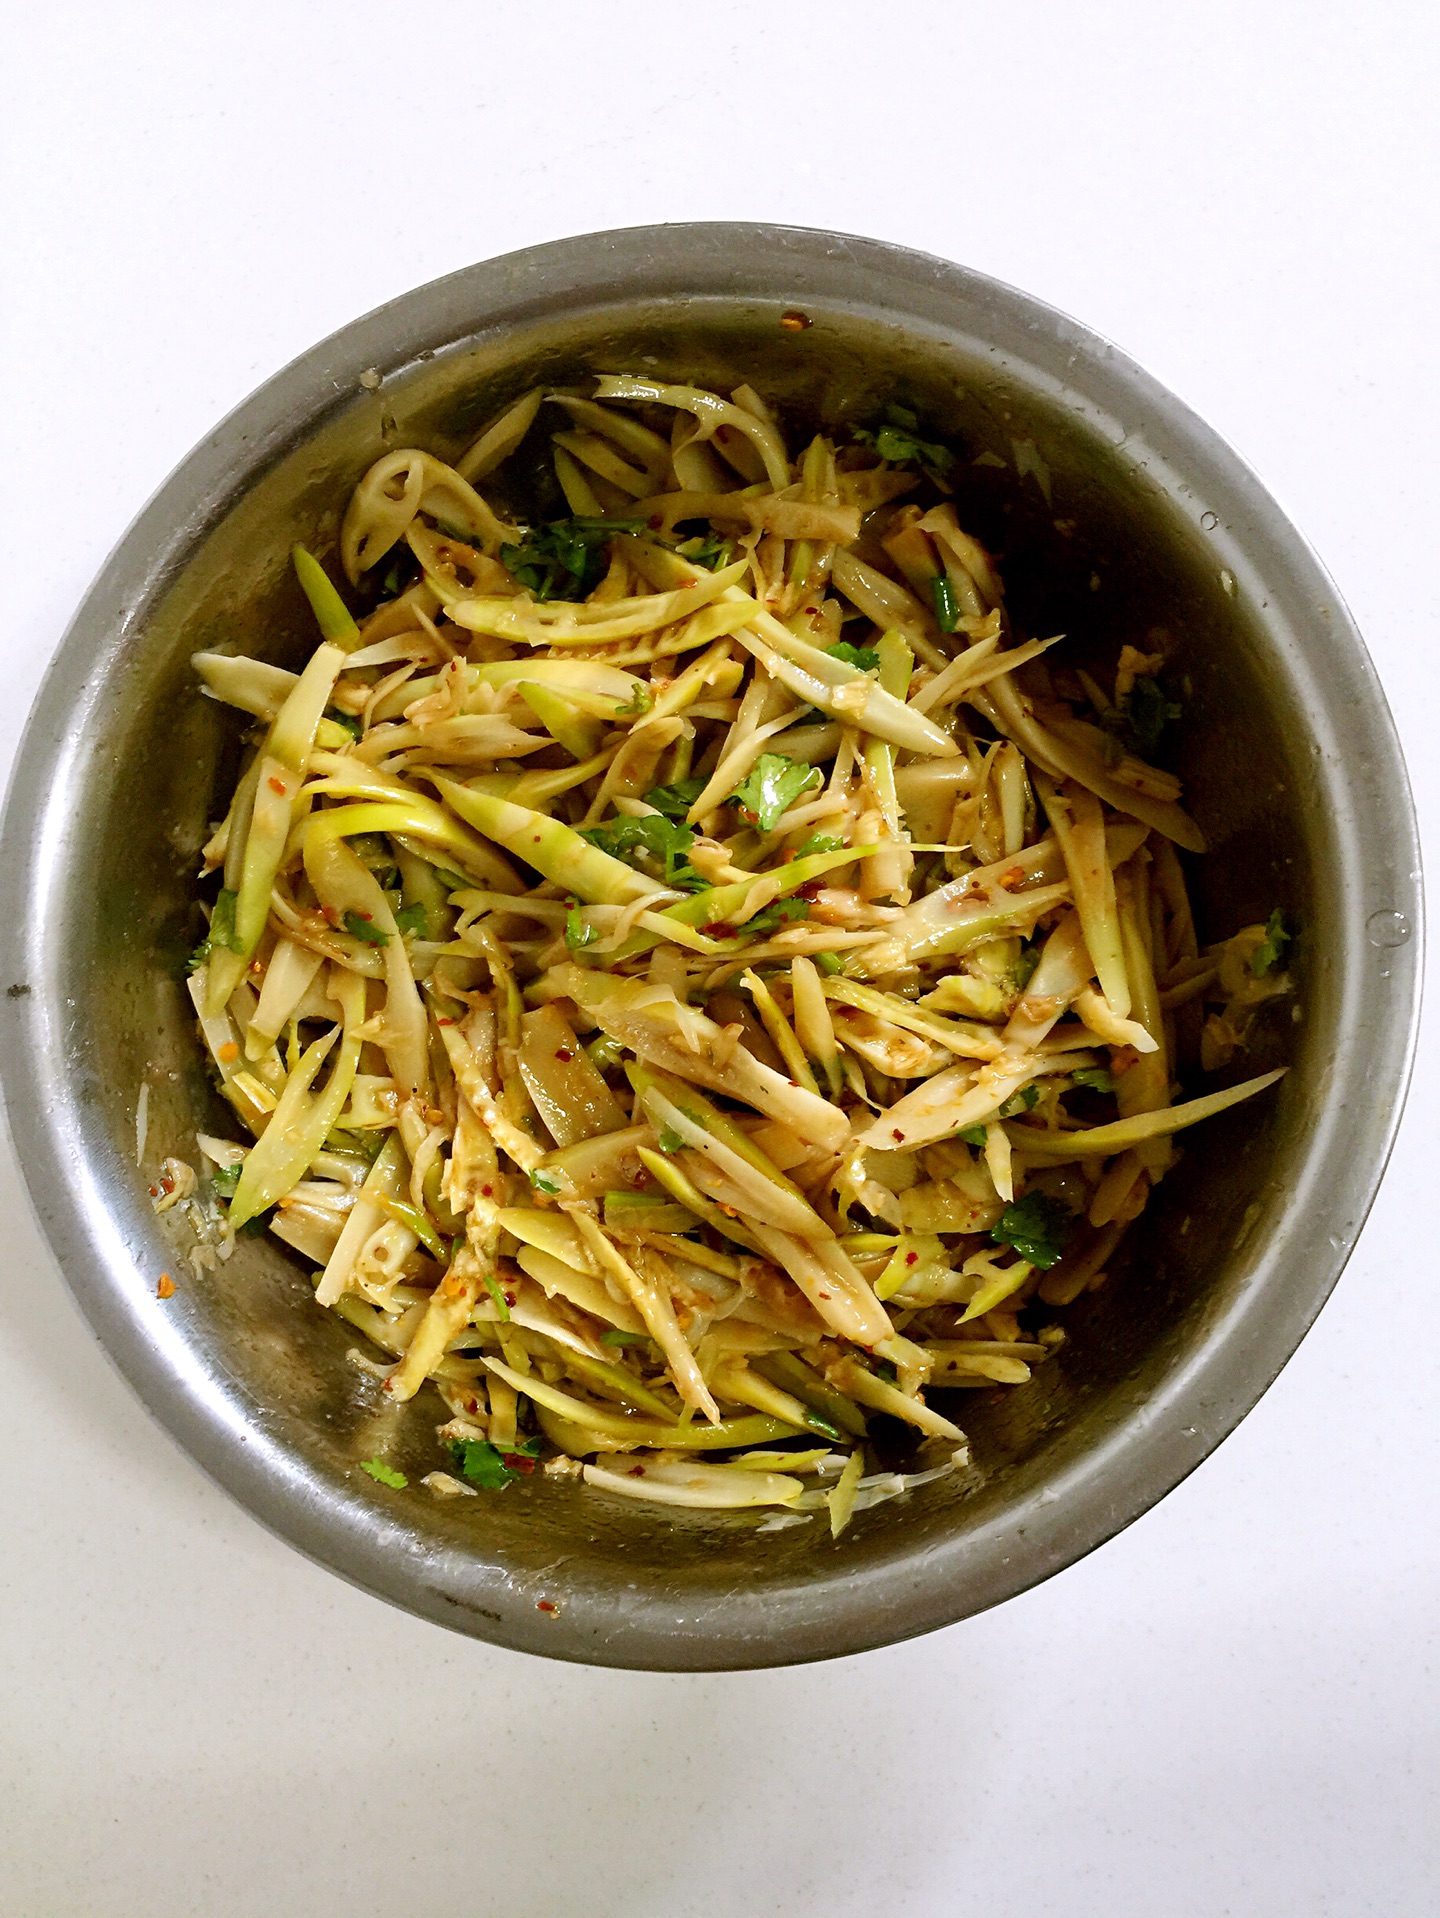 竹笋怎么做好吃 ?教你简单方法，鲜嫩脆爽，美味又下饭 | 说明书网